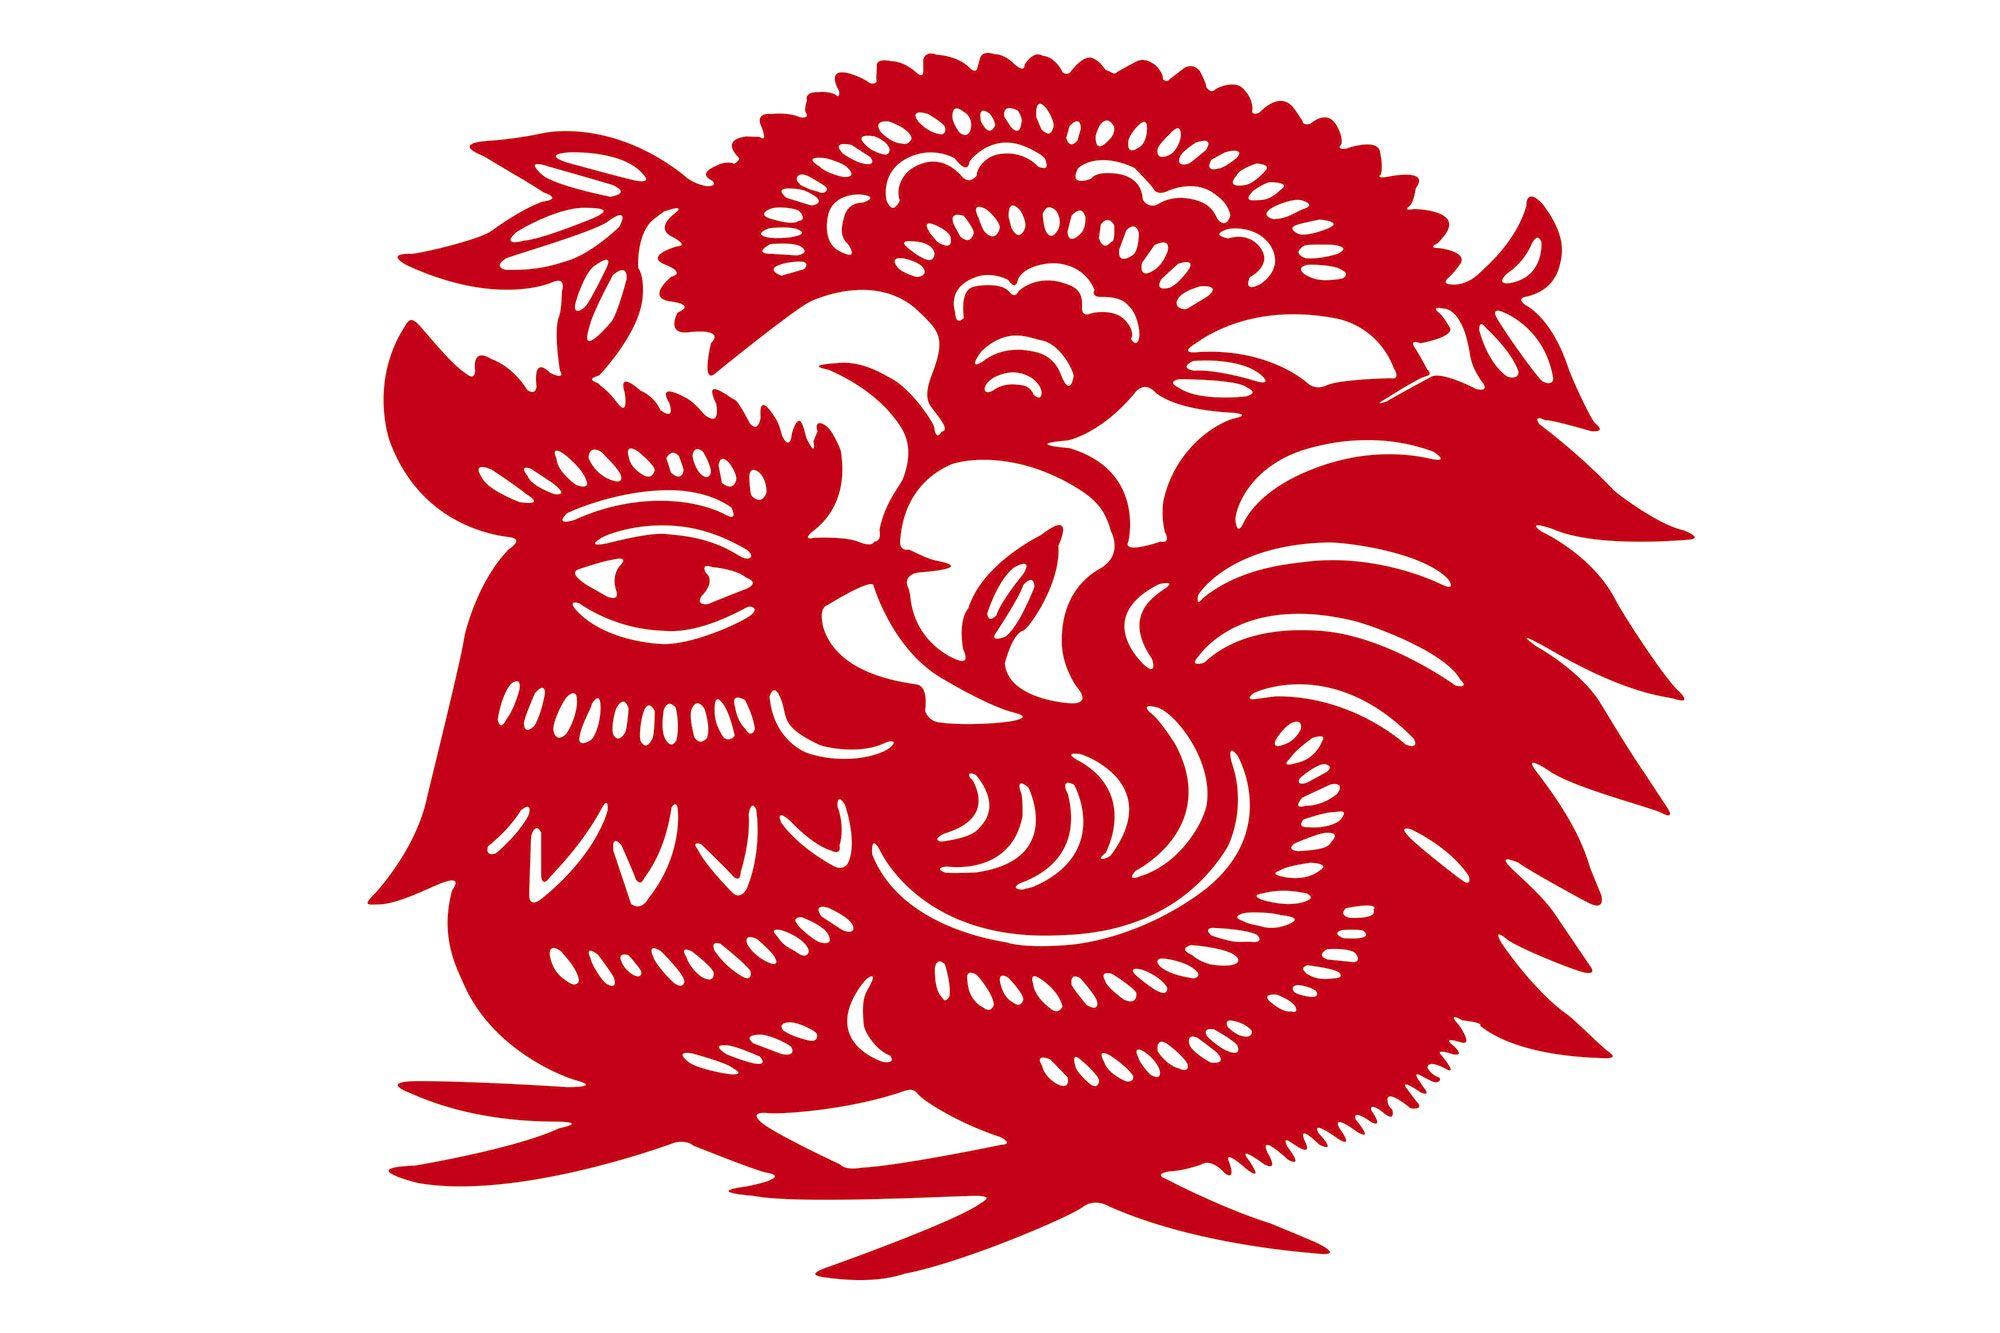 Cuál es tu signo (o animal) del horóscopo chino según el año en el que  naciste